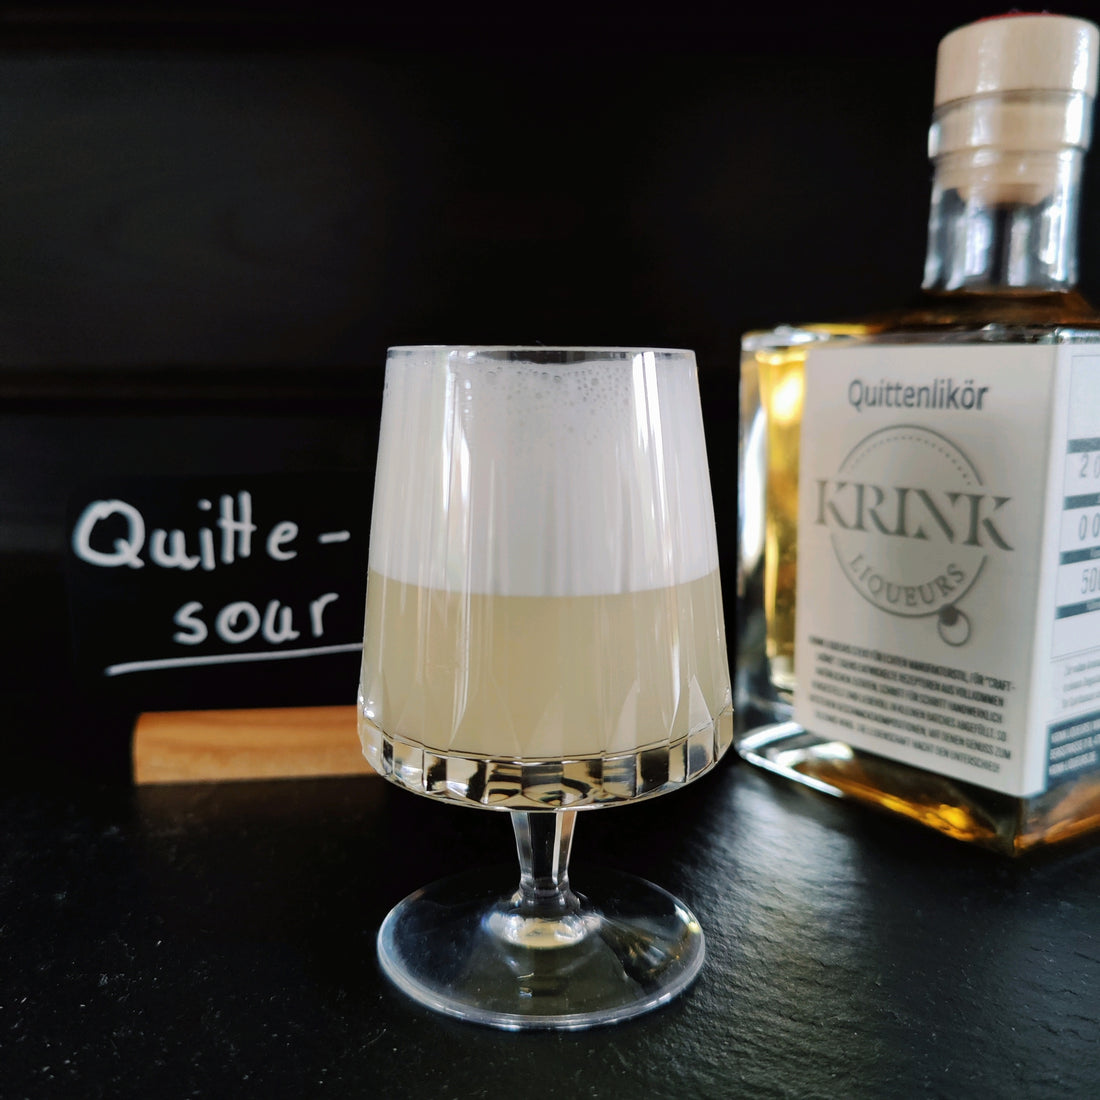 Quitte Sour Krink Liqueurs Quittenlikör gemixt als Sour. Ein Cocktailrezept das Quittenlikör und Rum auf spritzig fruchtige Weise vereint